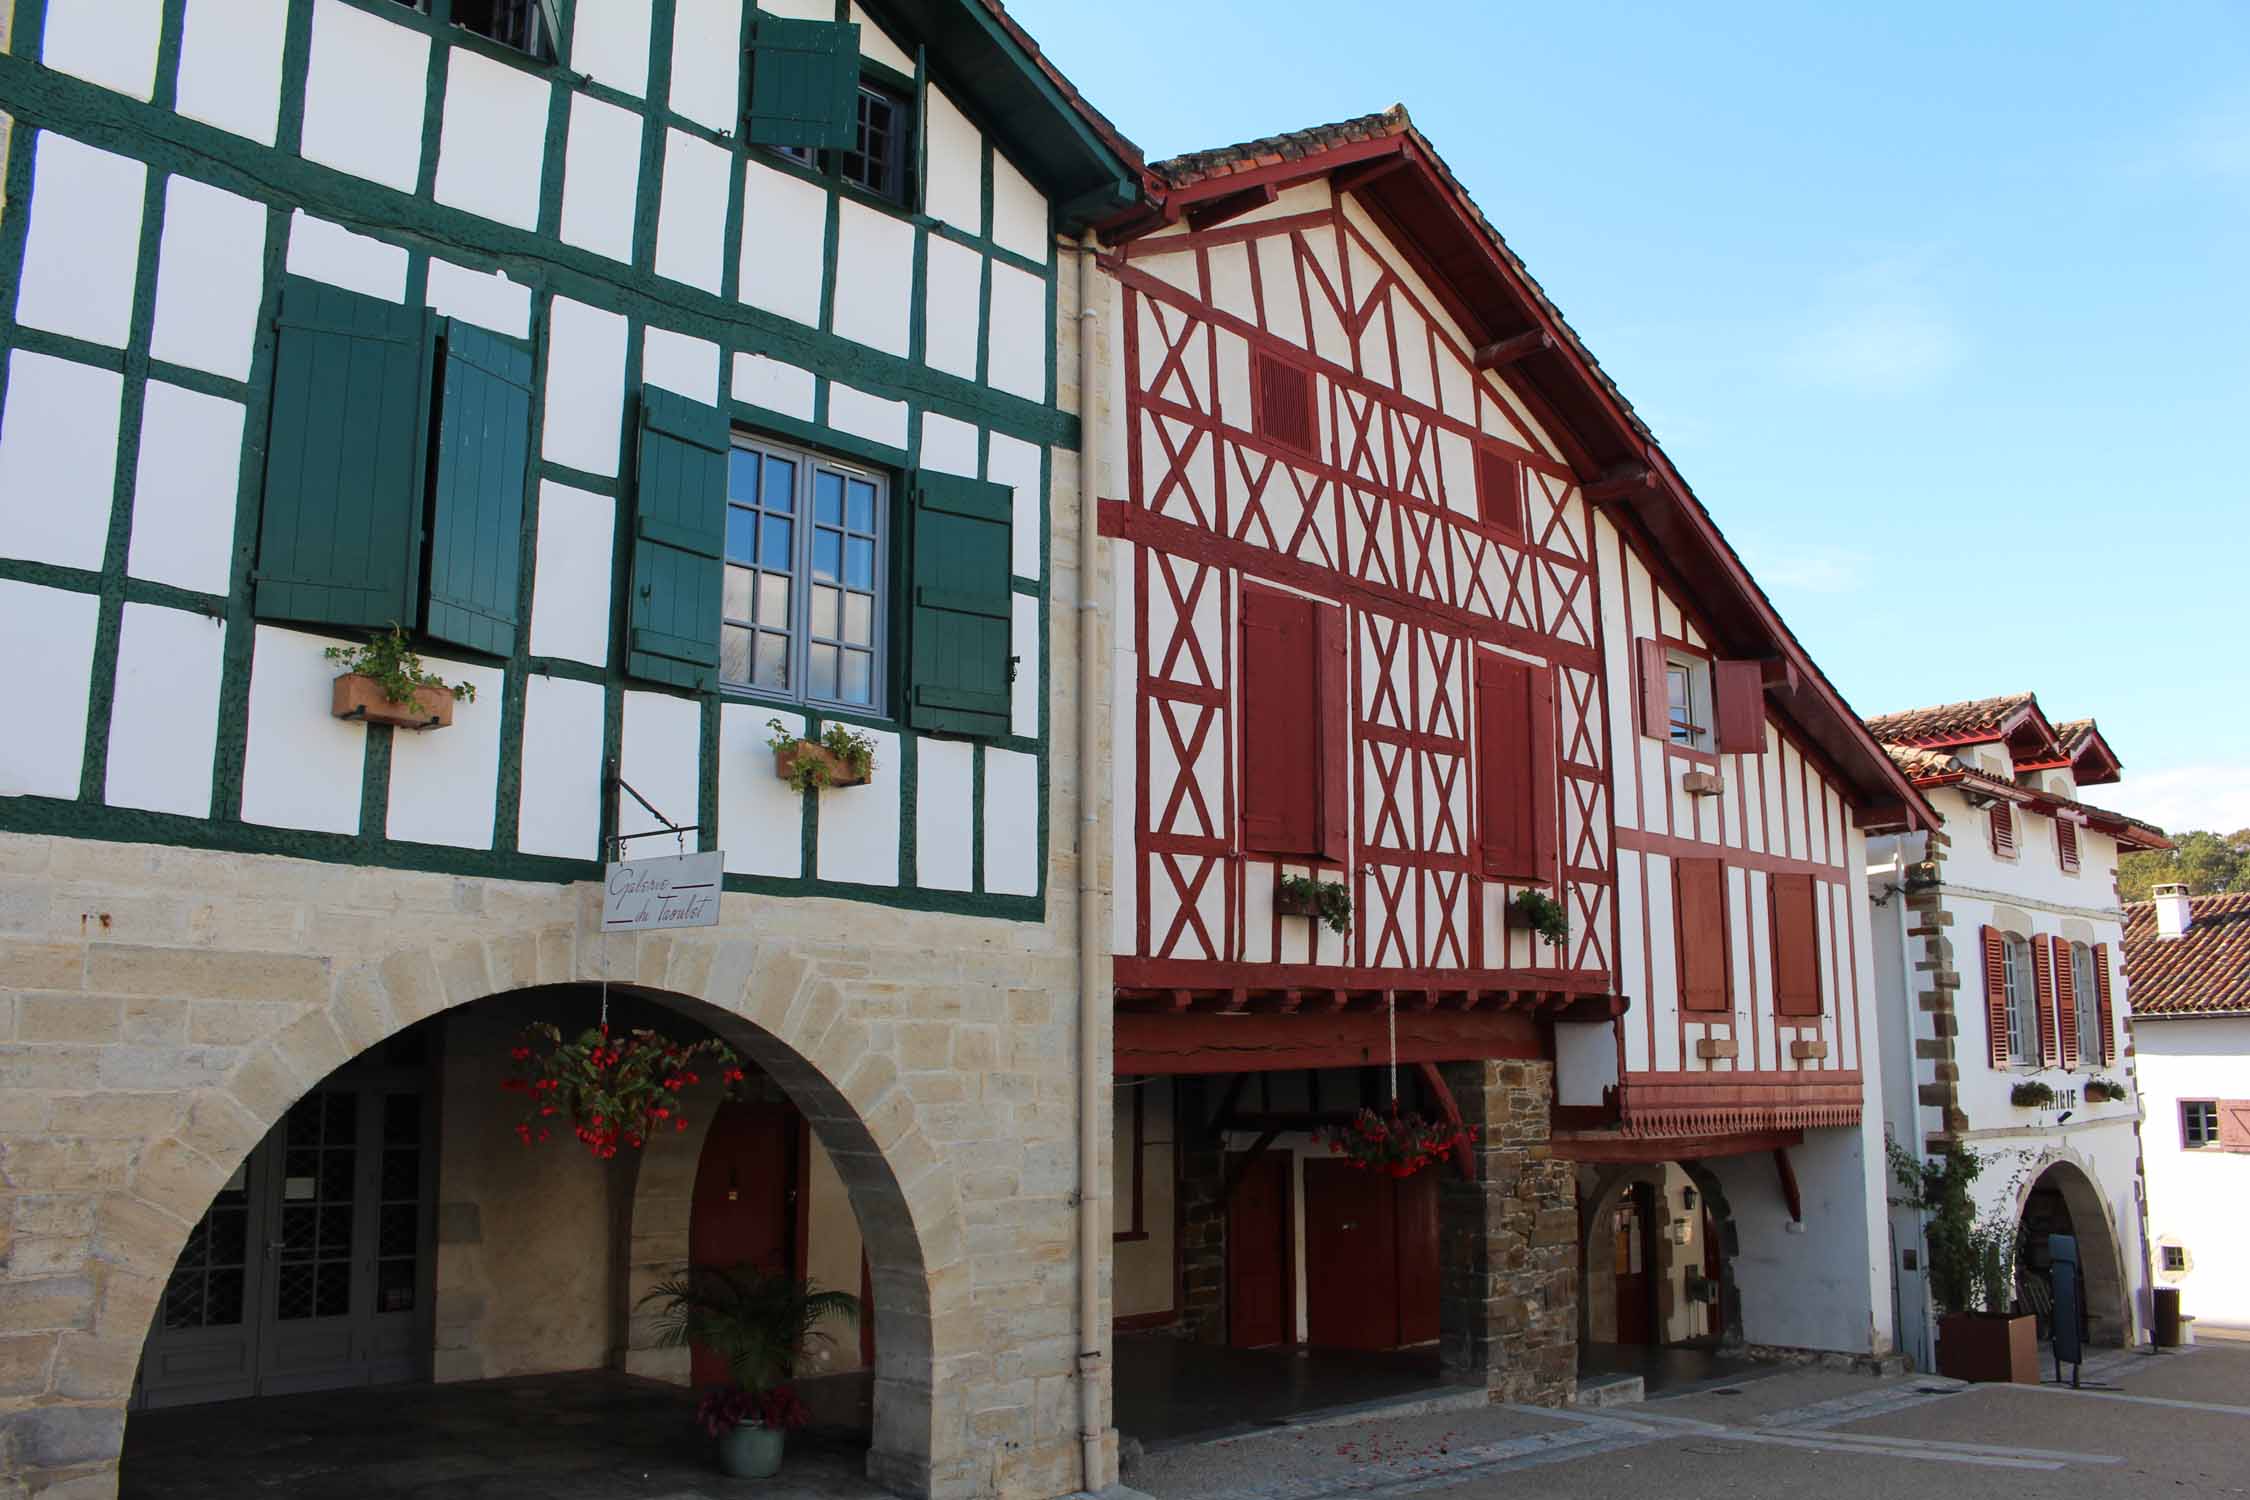 La Bastide Clairence, maisons colorées